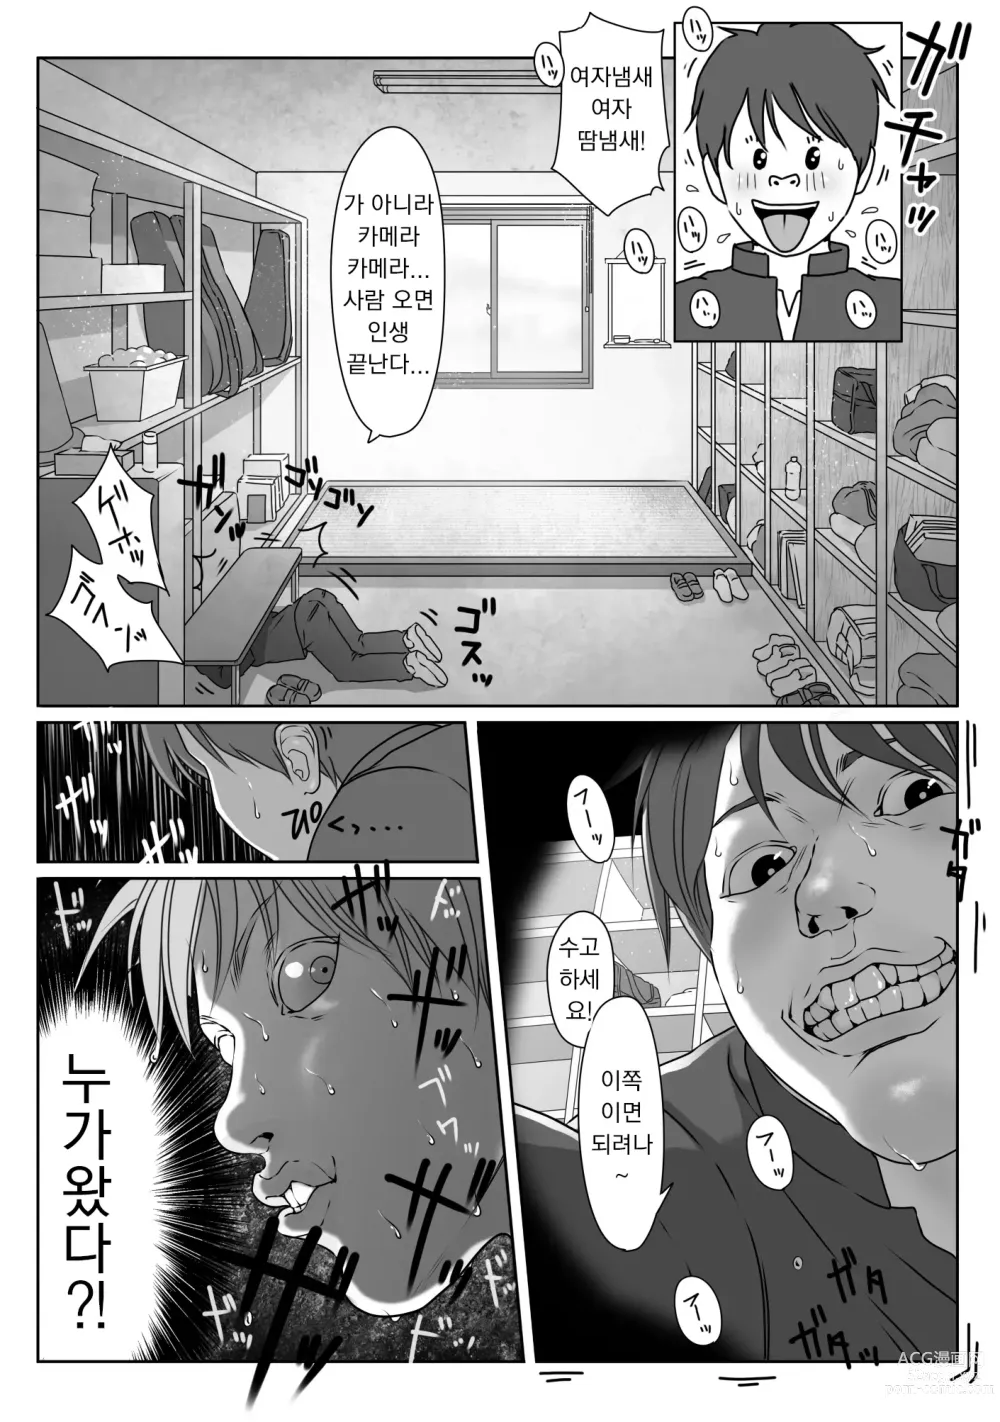 Page 17 of doujinshi 테니스부는 야구부의 손에 떨어졌습니다